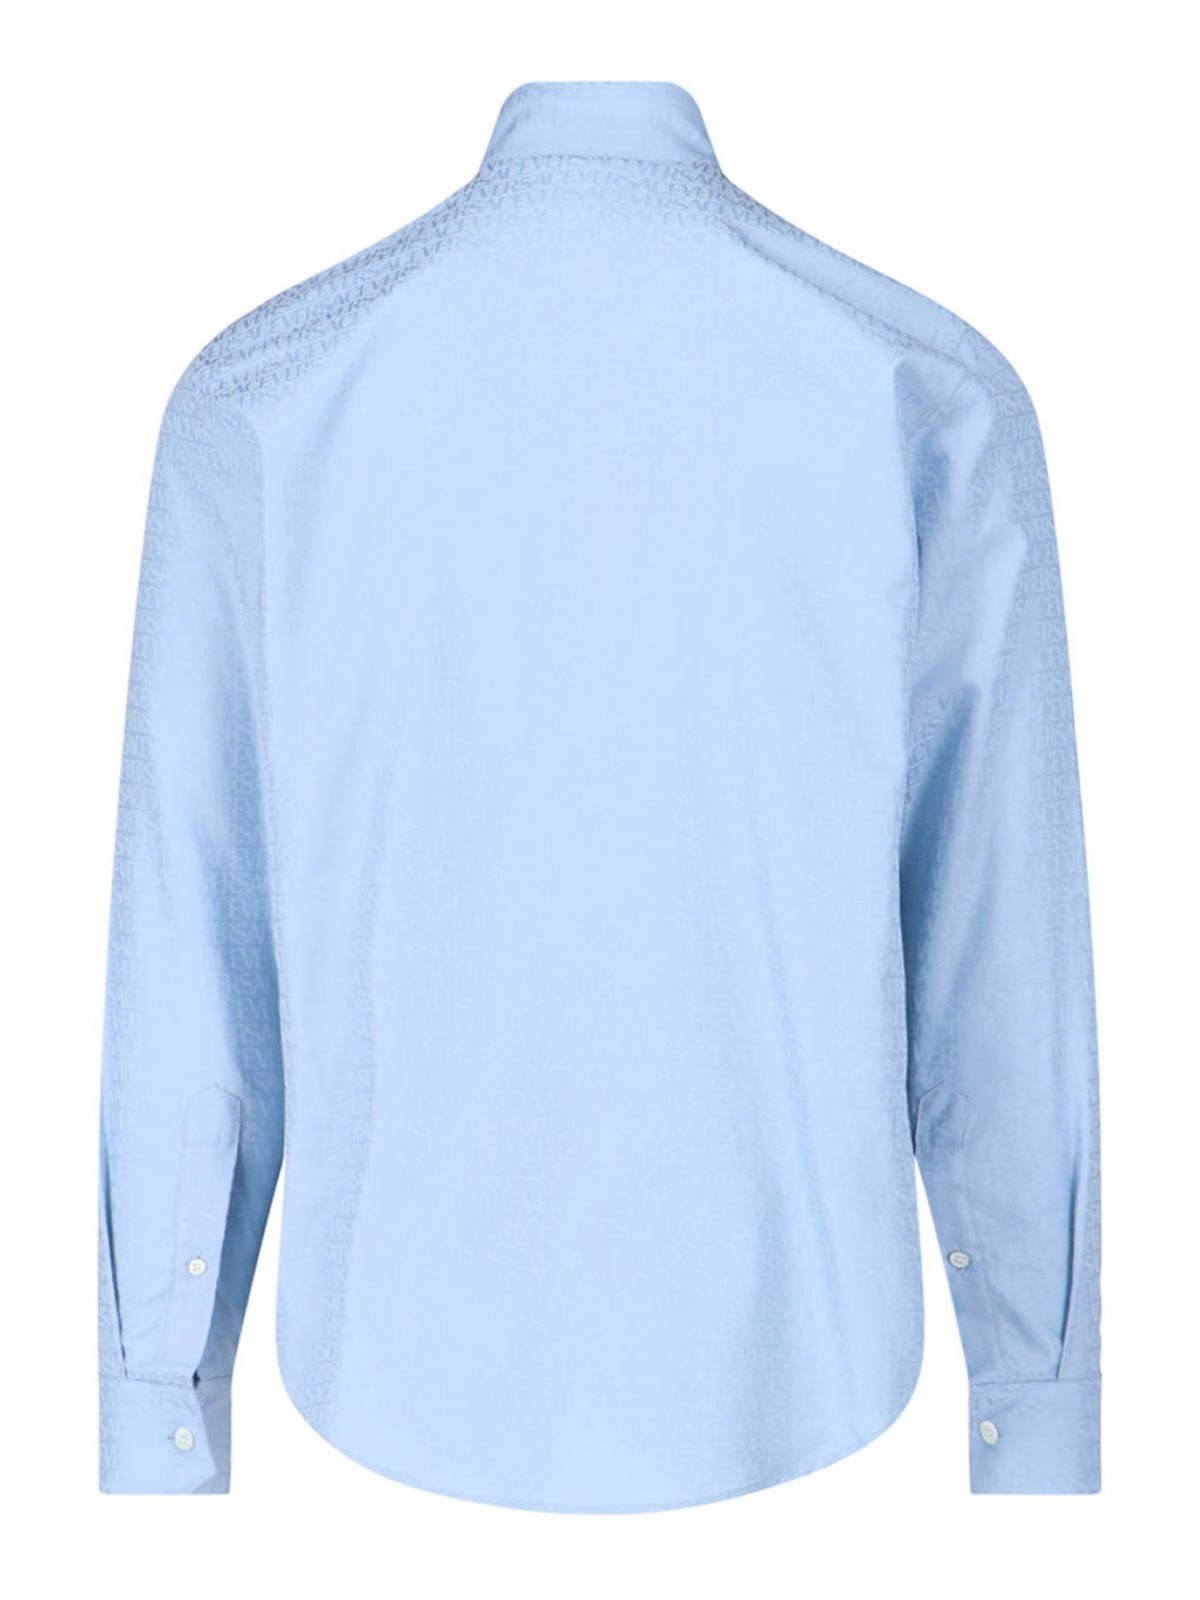 Versace Blue Allover Shirt